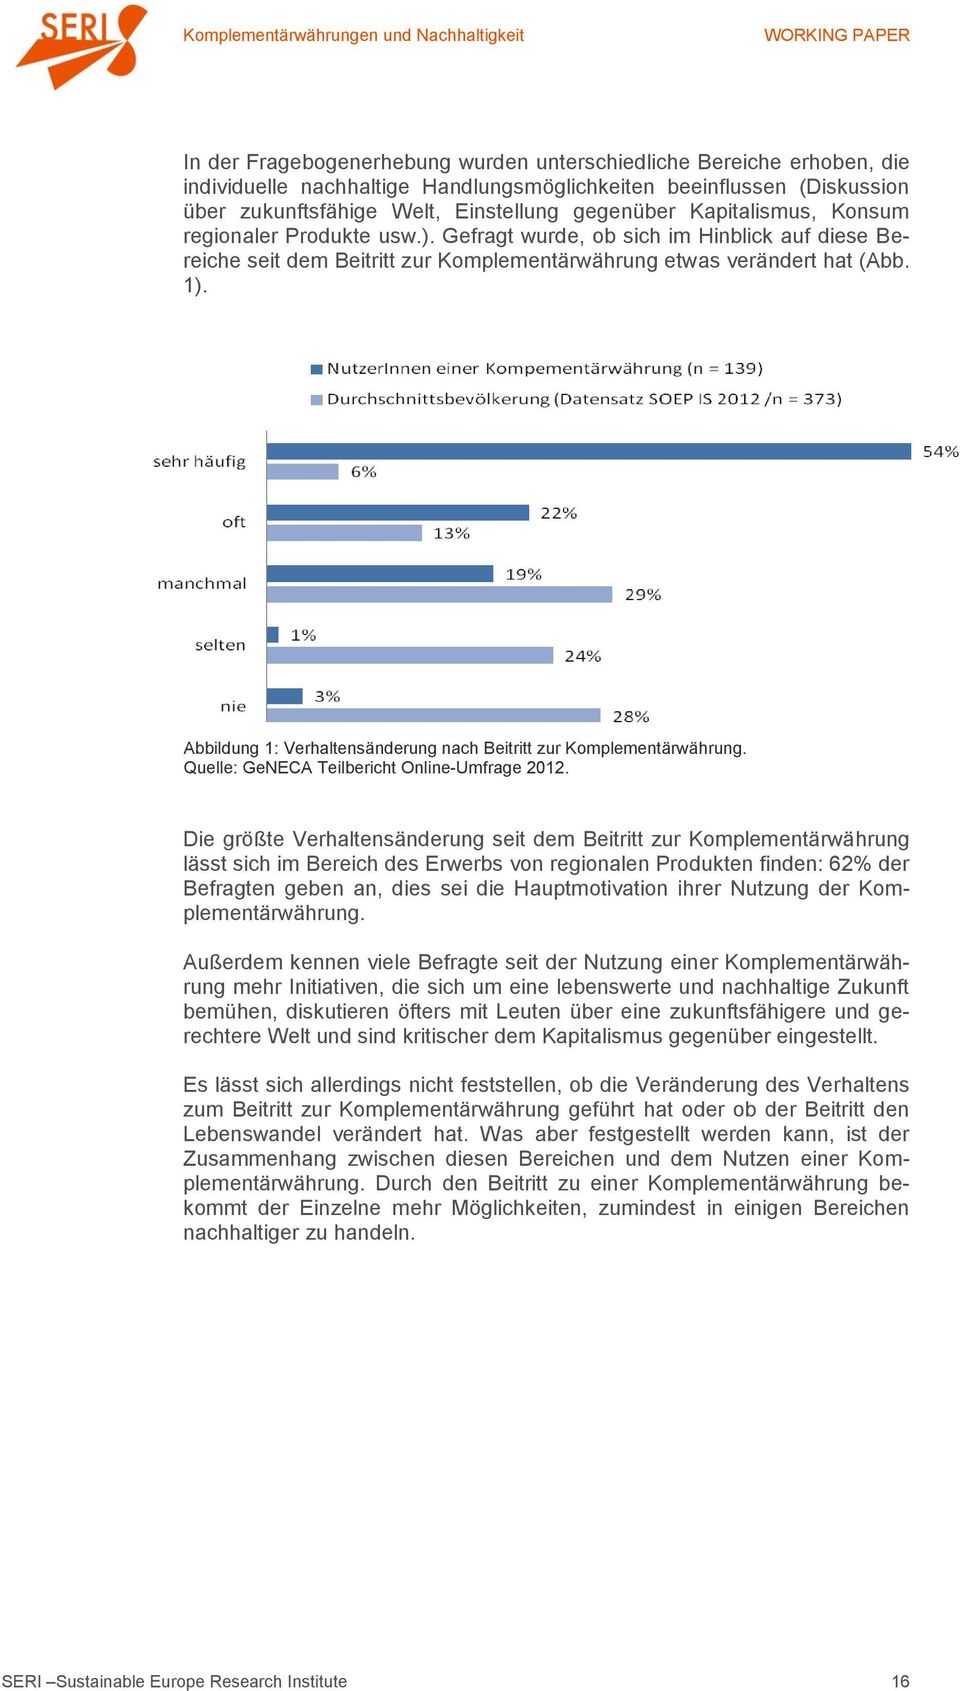 Abbildung 1: Verhaltensänderung nach Beitritt zur Komplementärwährung. Quelle: GeNECA Teilbericht Online-Umfrage 2012.